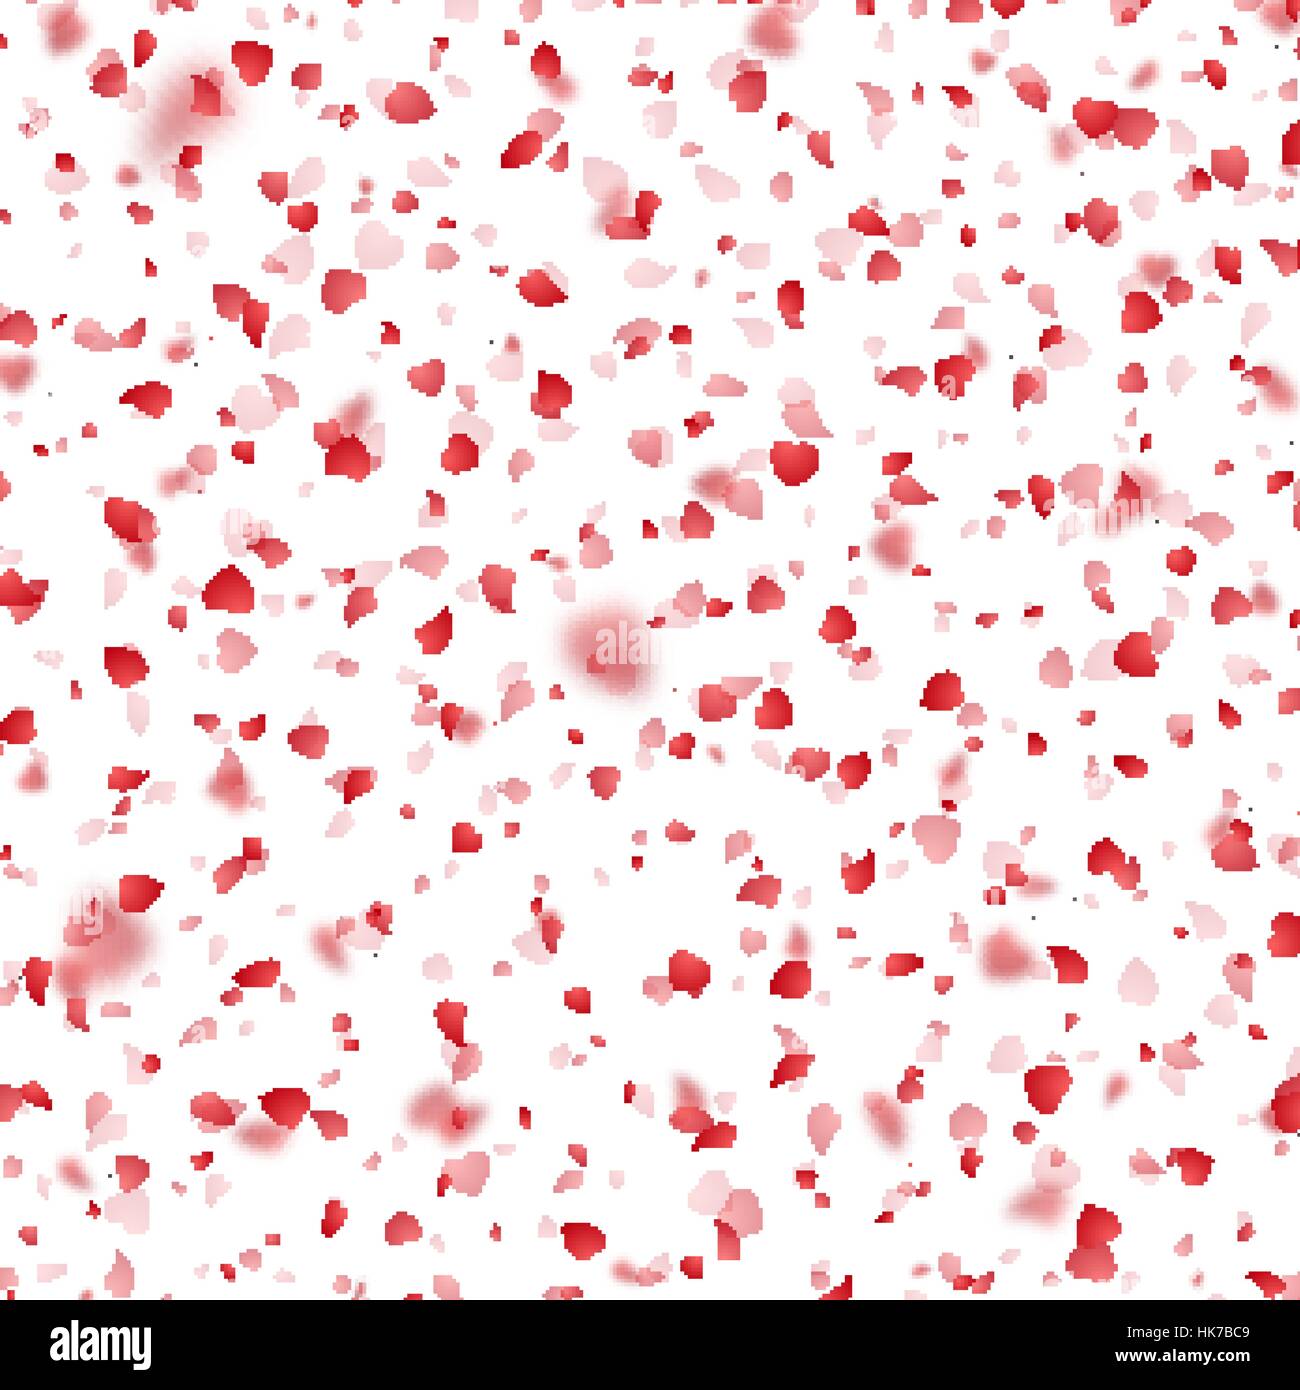 Valentinstag Hintergrund rote Herzen Blütenblätter fallen auf weißem Hintergrund. Stock Vektor